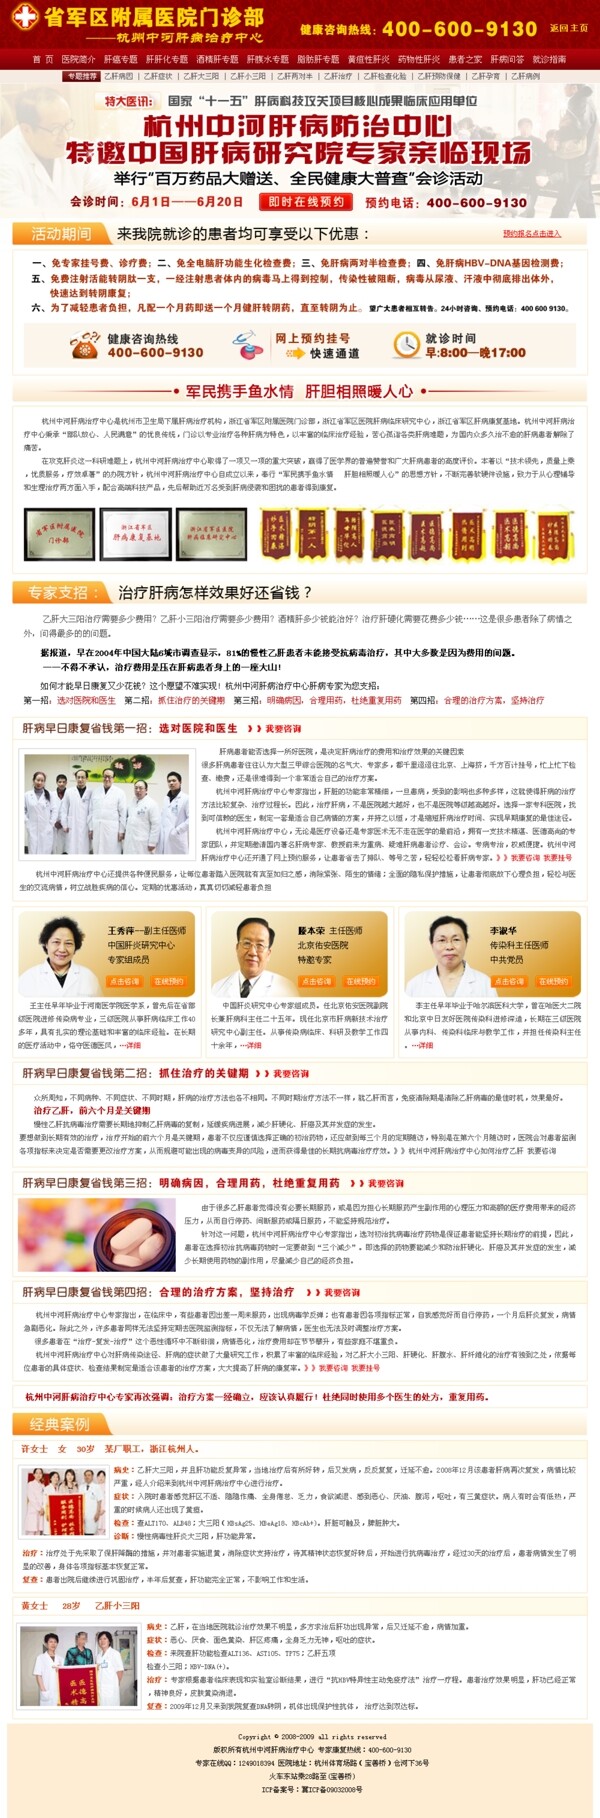 医院网站专题页面模板肝病医院网站模板图片